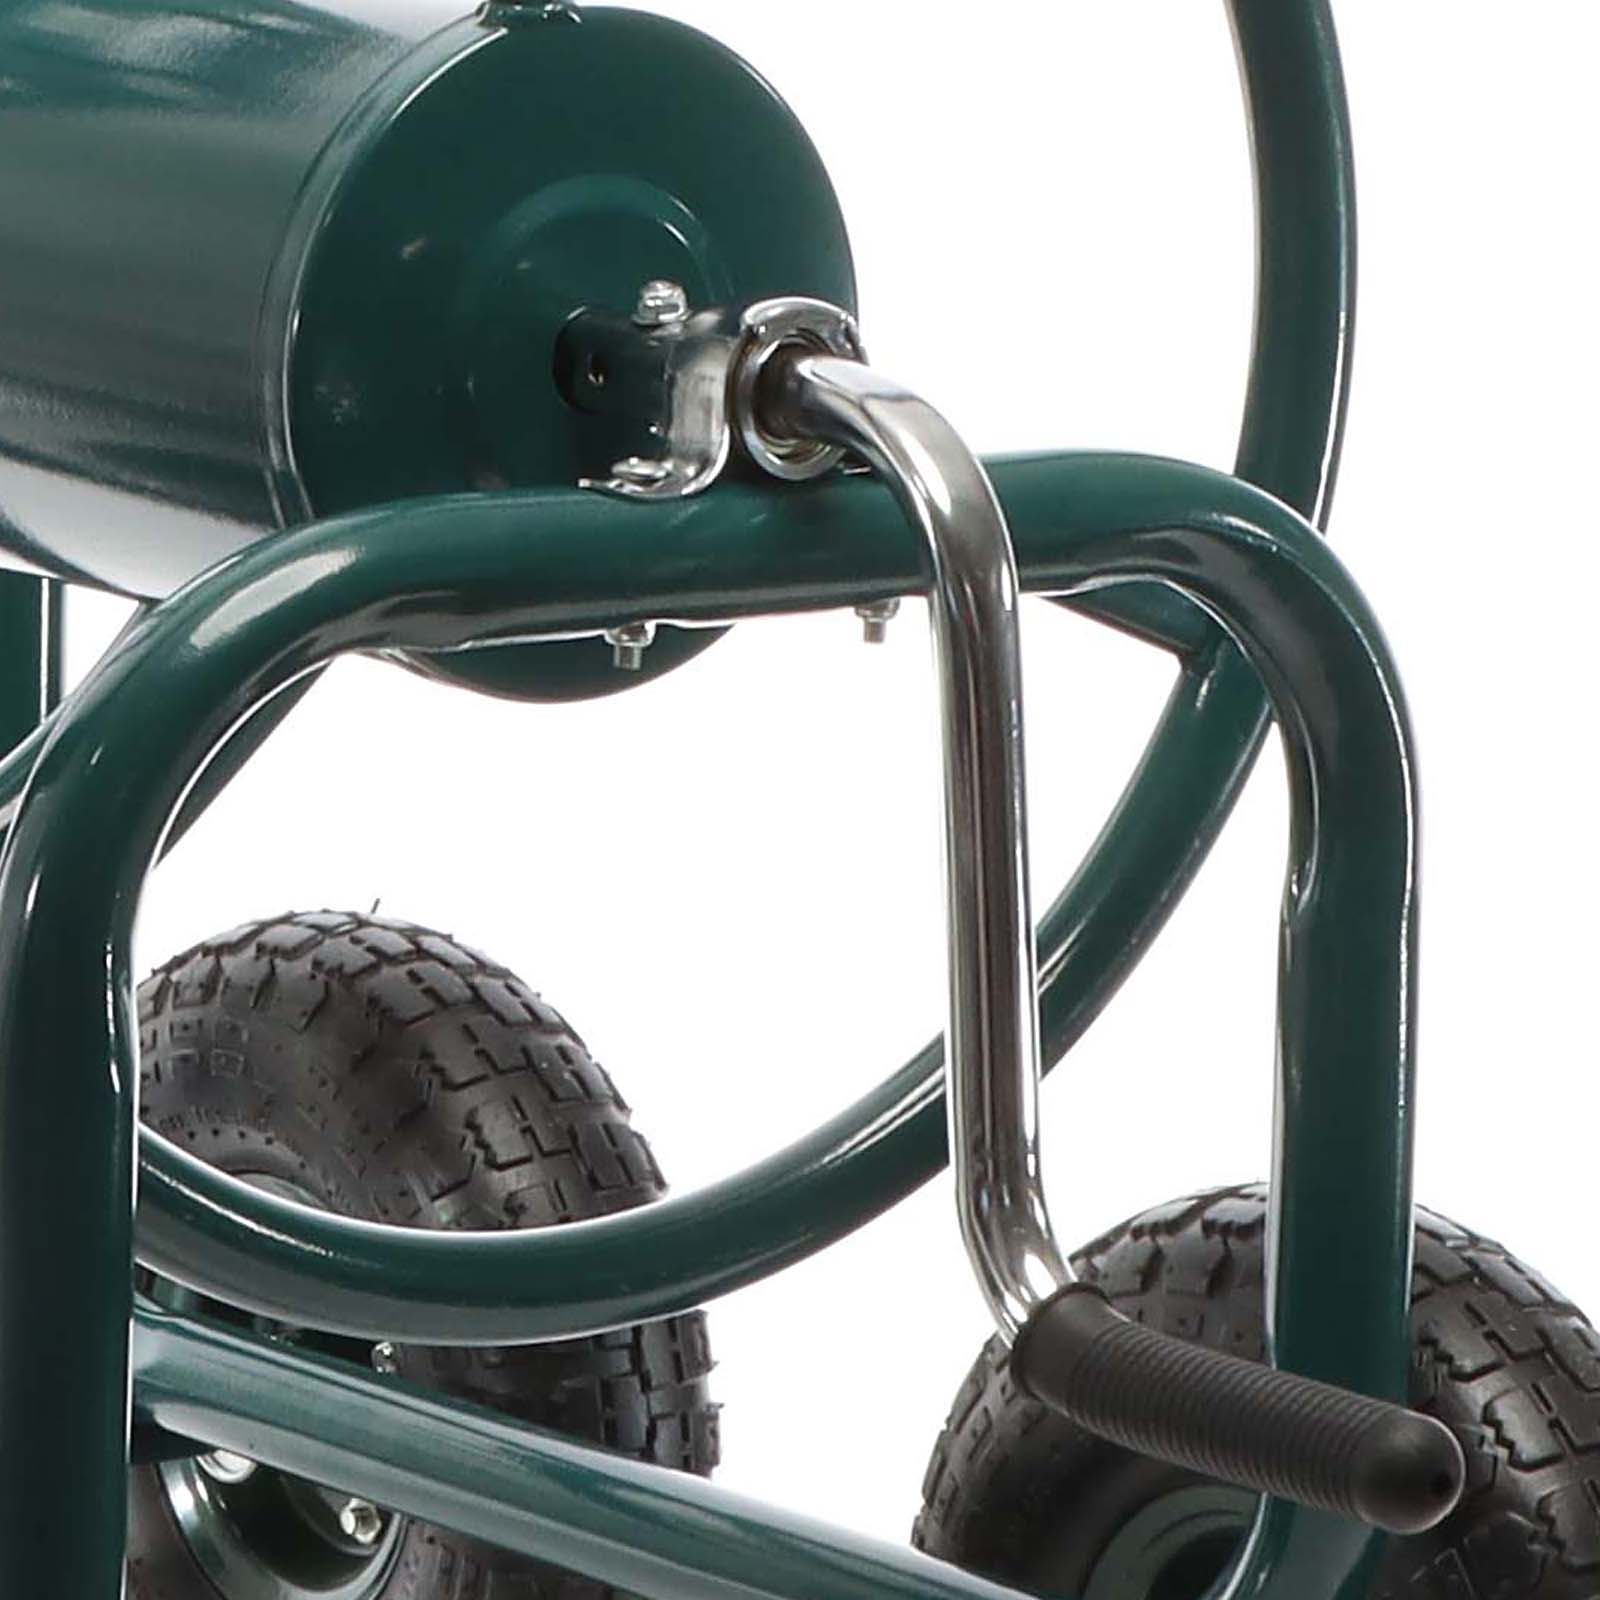 Hose Reel Cart with Basket Wheeled Hose Reel Holder for Outdoors